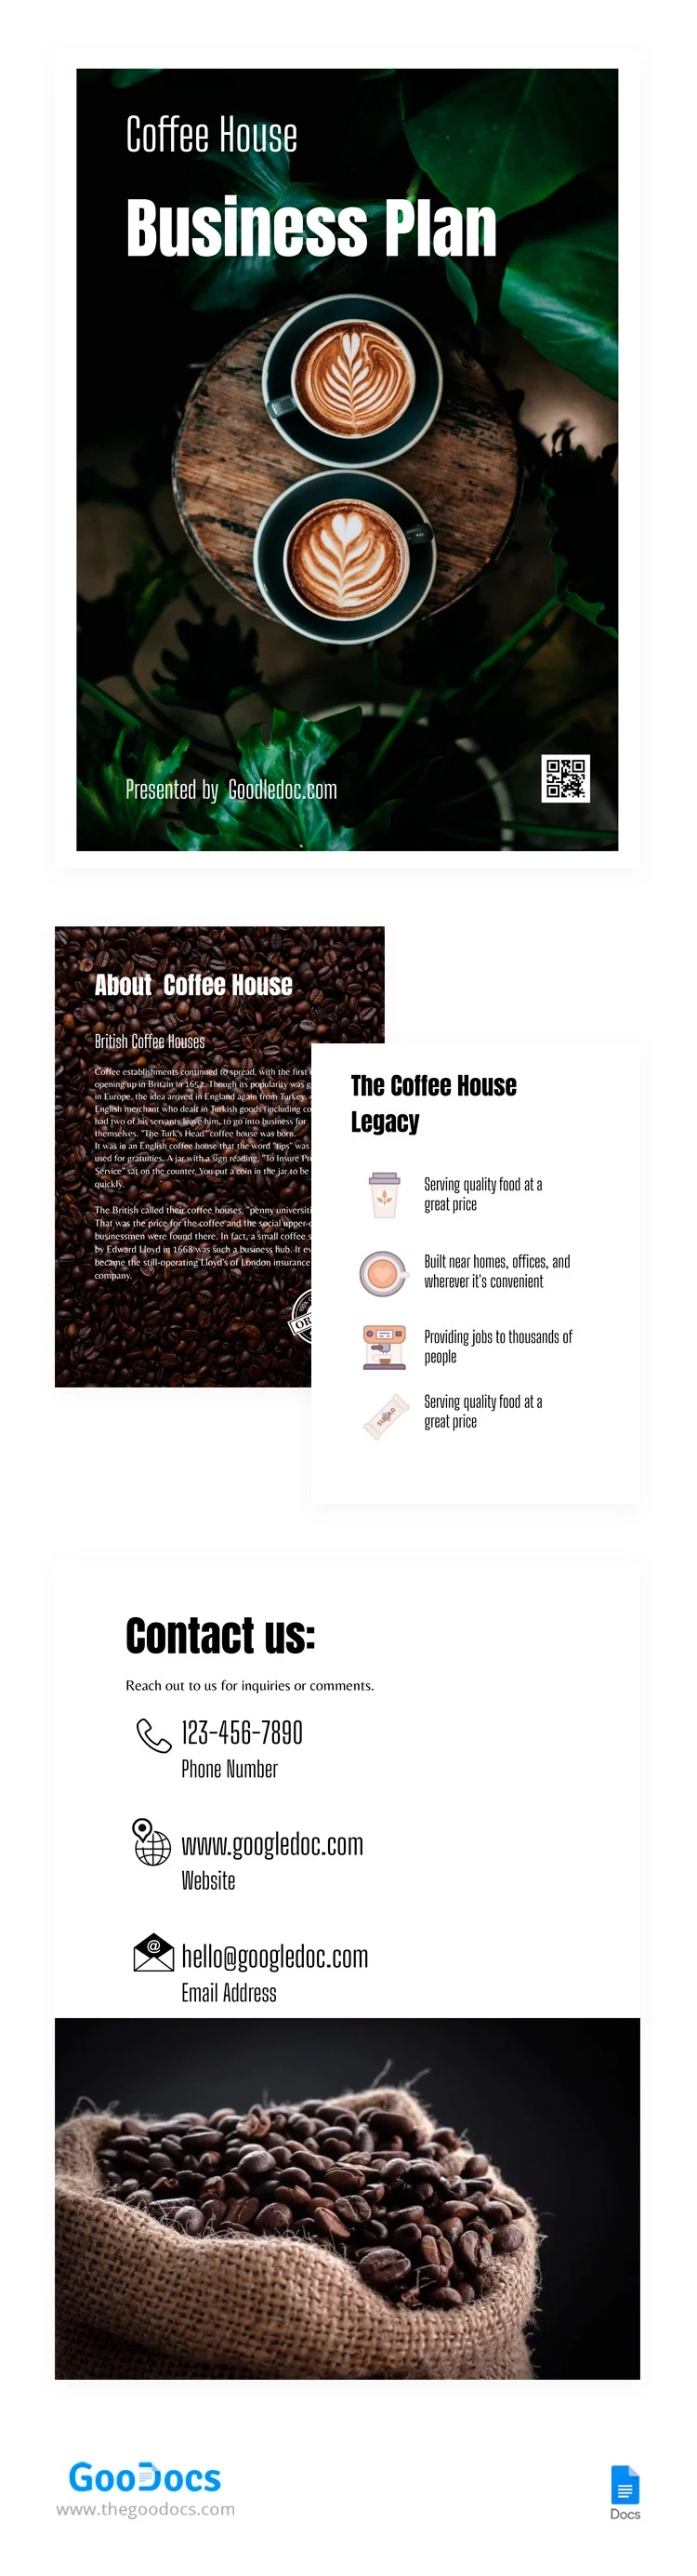 Piano commerciale del caffè - free Google Docs Template - 10062909